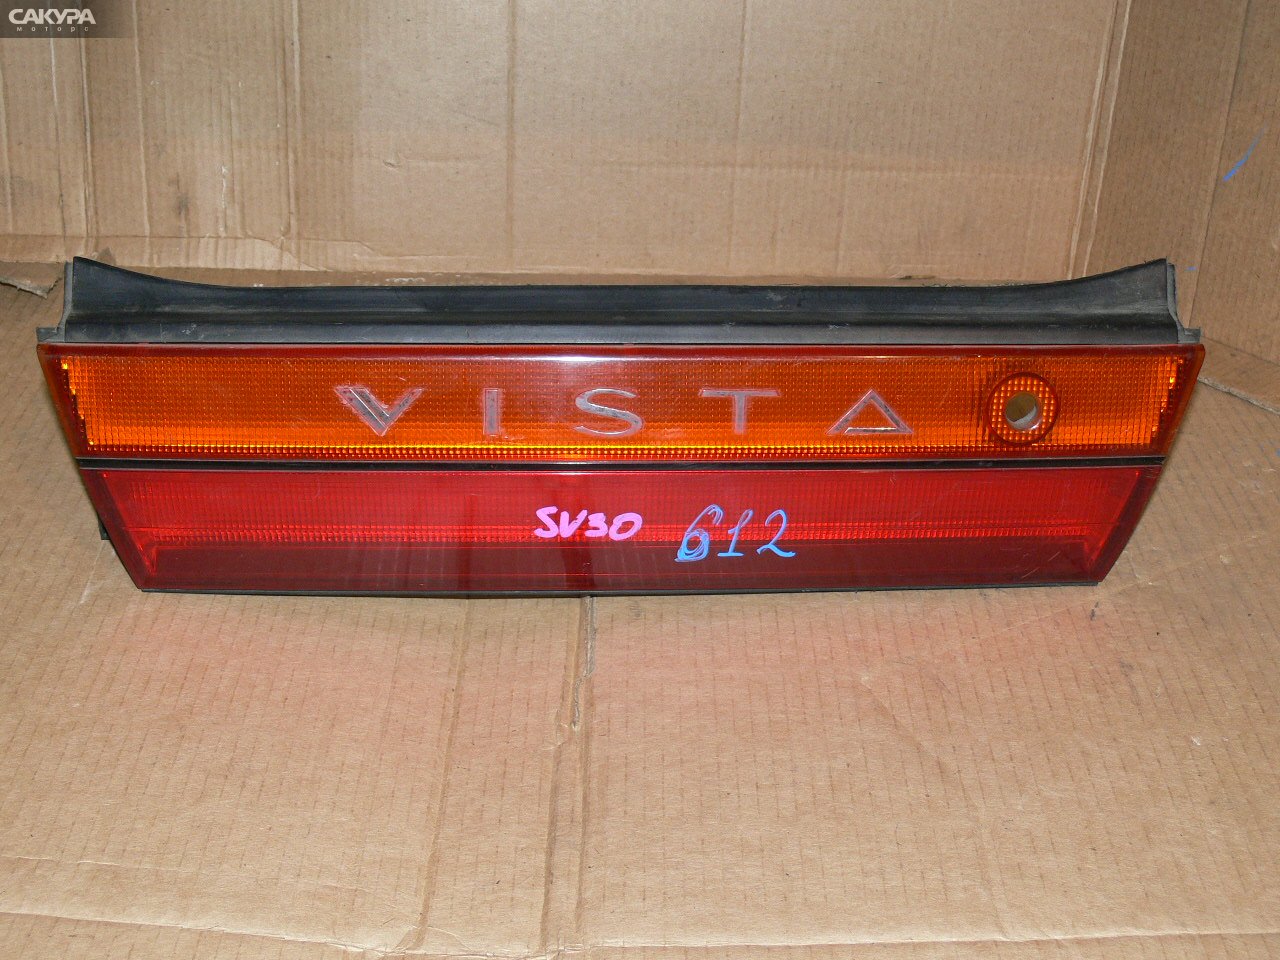 Фонарь вставка багажника Toyota Vista SV30: купить в Сакура Иркутск.